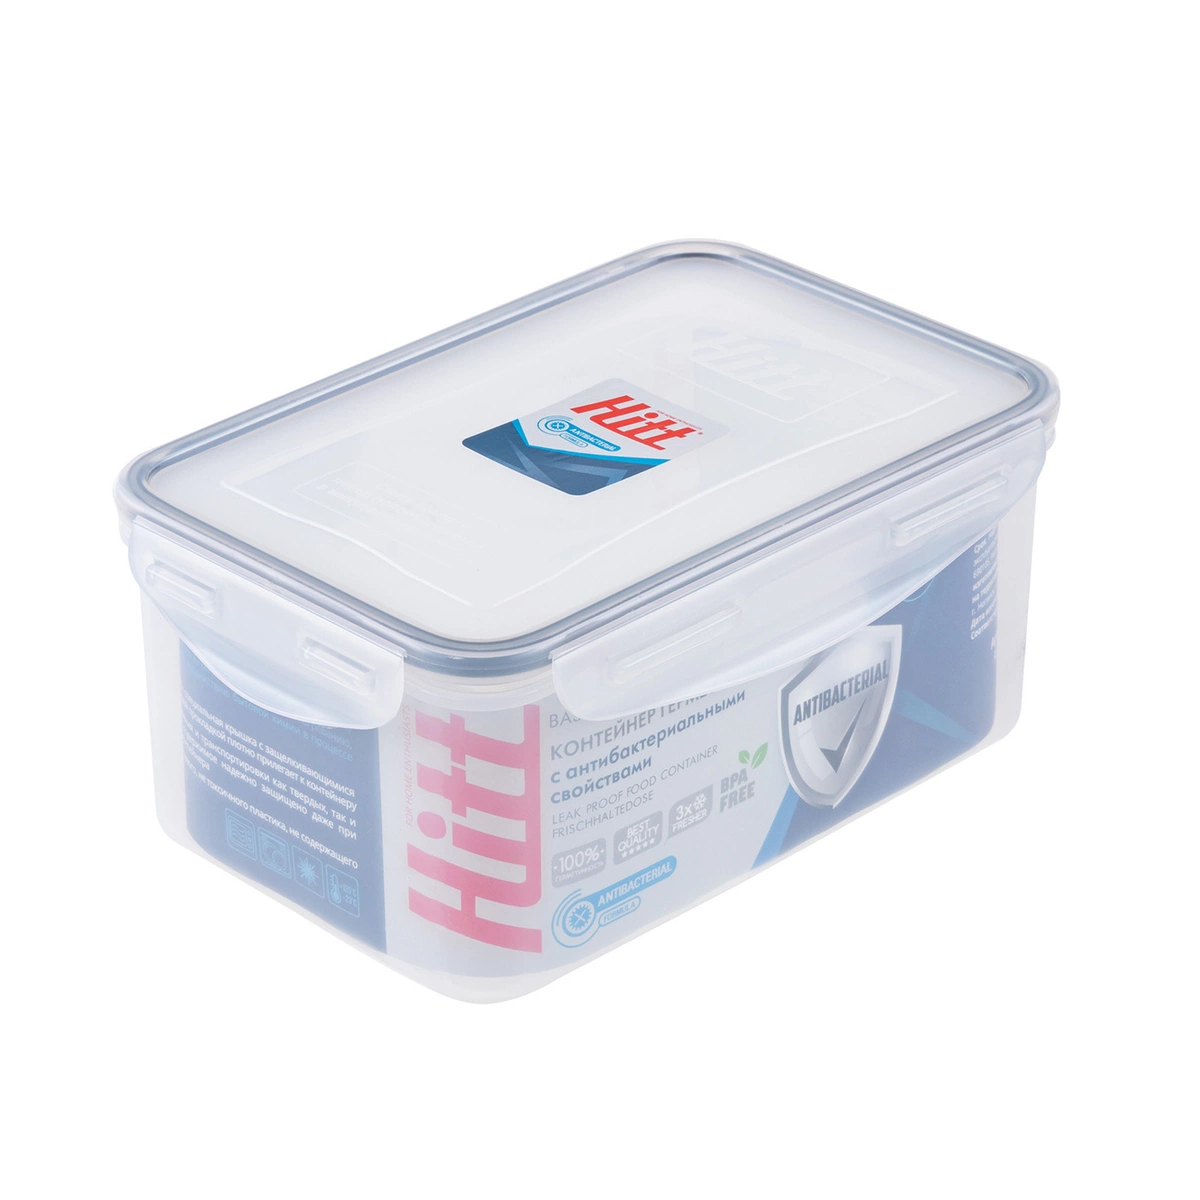 Контейнер герметичный антибактериальный Hitt 1,5 л контейнер для продуктов atlantis 1 4л